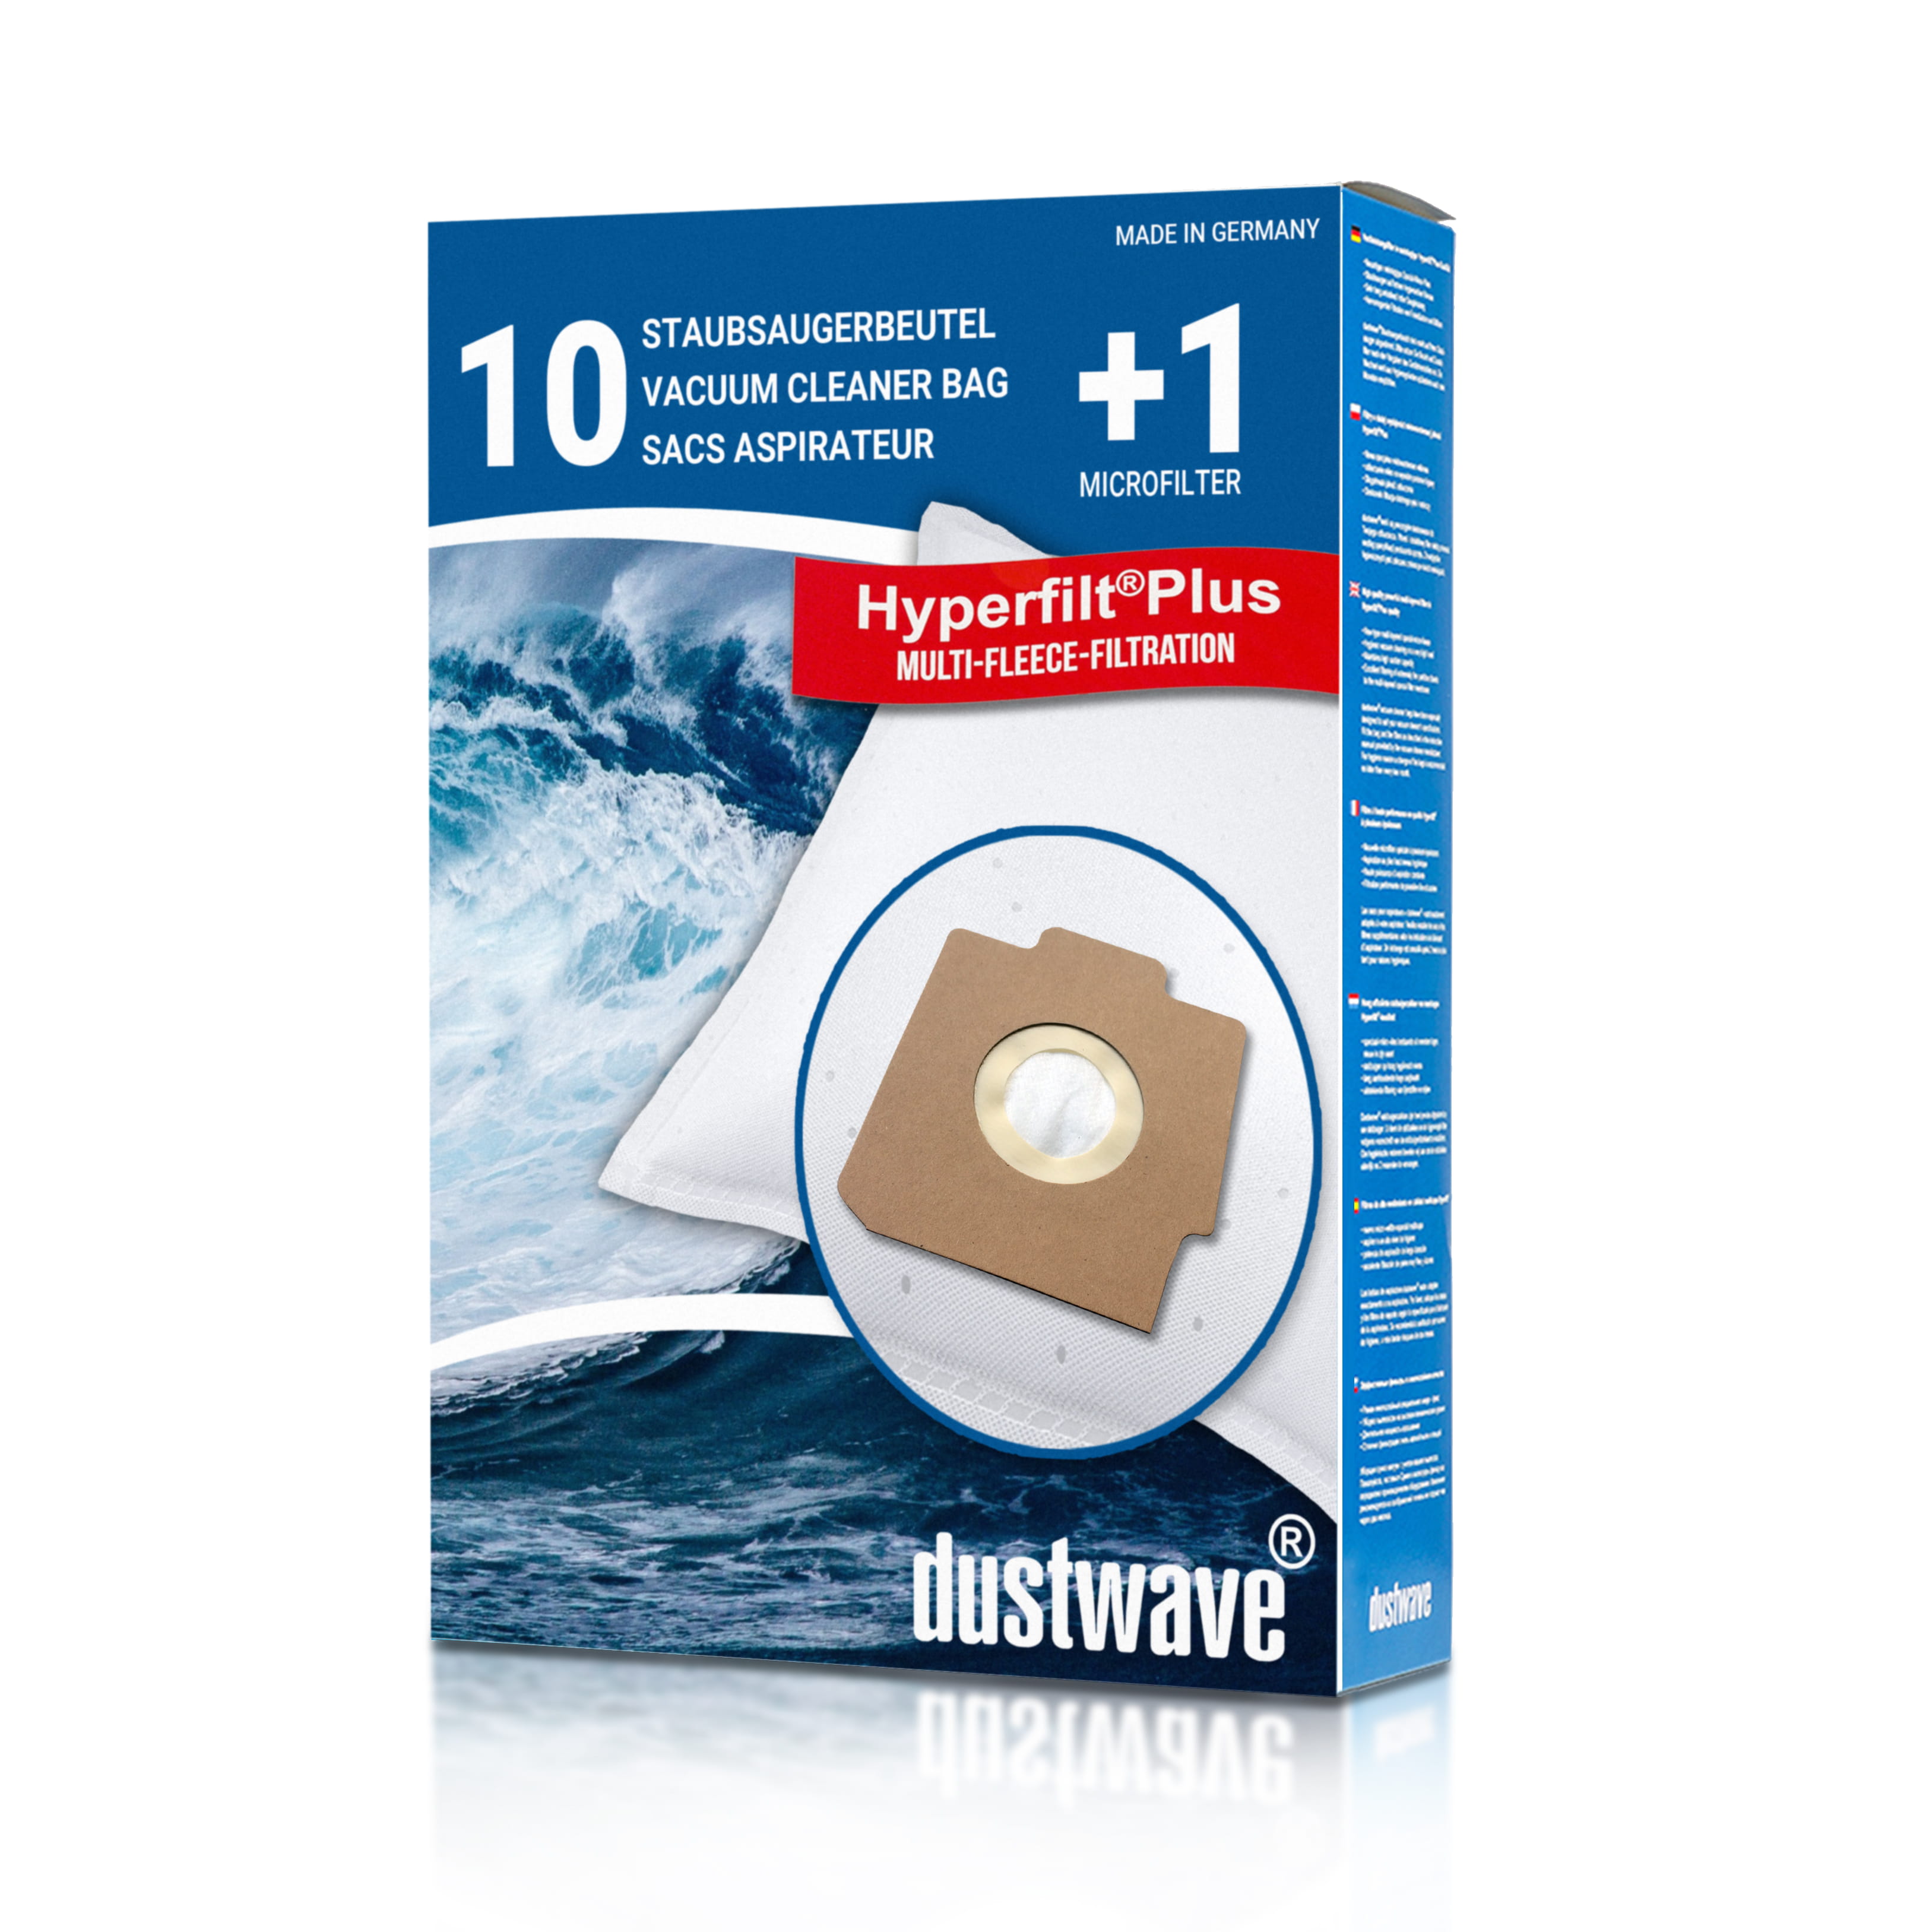 Dustwave® 10 Staubsaugerbeutel für Hoover 100...500 System Sensotronic - hocheffizient, mehrlagiges Mikrovlies mit Hygieneverschluss - Made in Germany